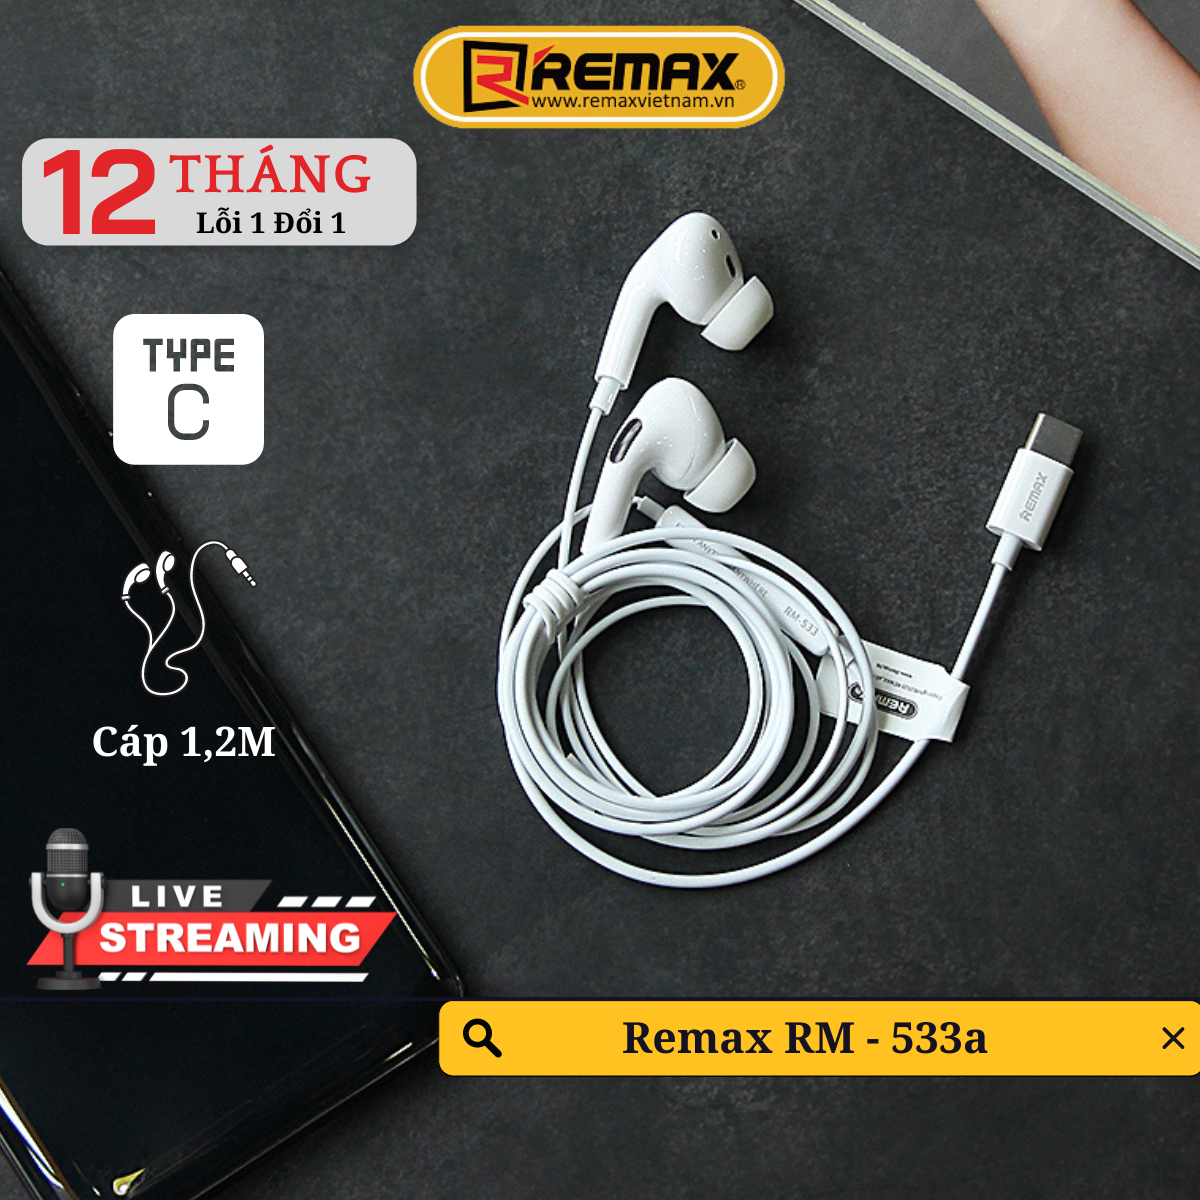 Tai nghe có dây chân Type C - Airplus Pro Remax RM-533a - Âm Bass Chắc Khoẻ - Hàng Chính Hãng Remax Bảo Hành 12 Tháng 1 Đổi 1